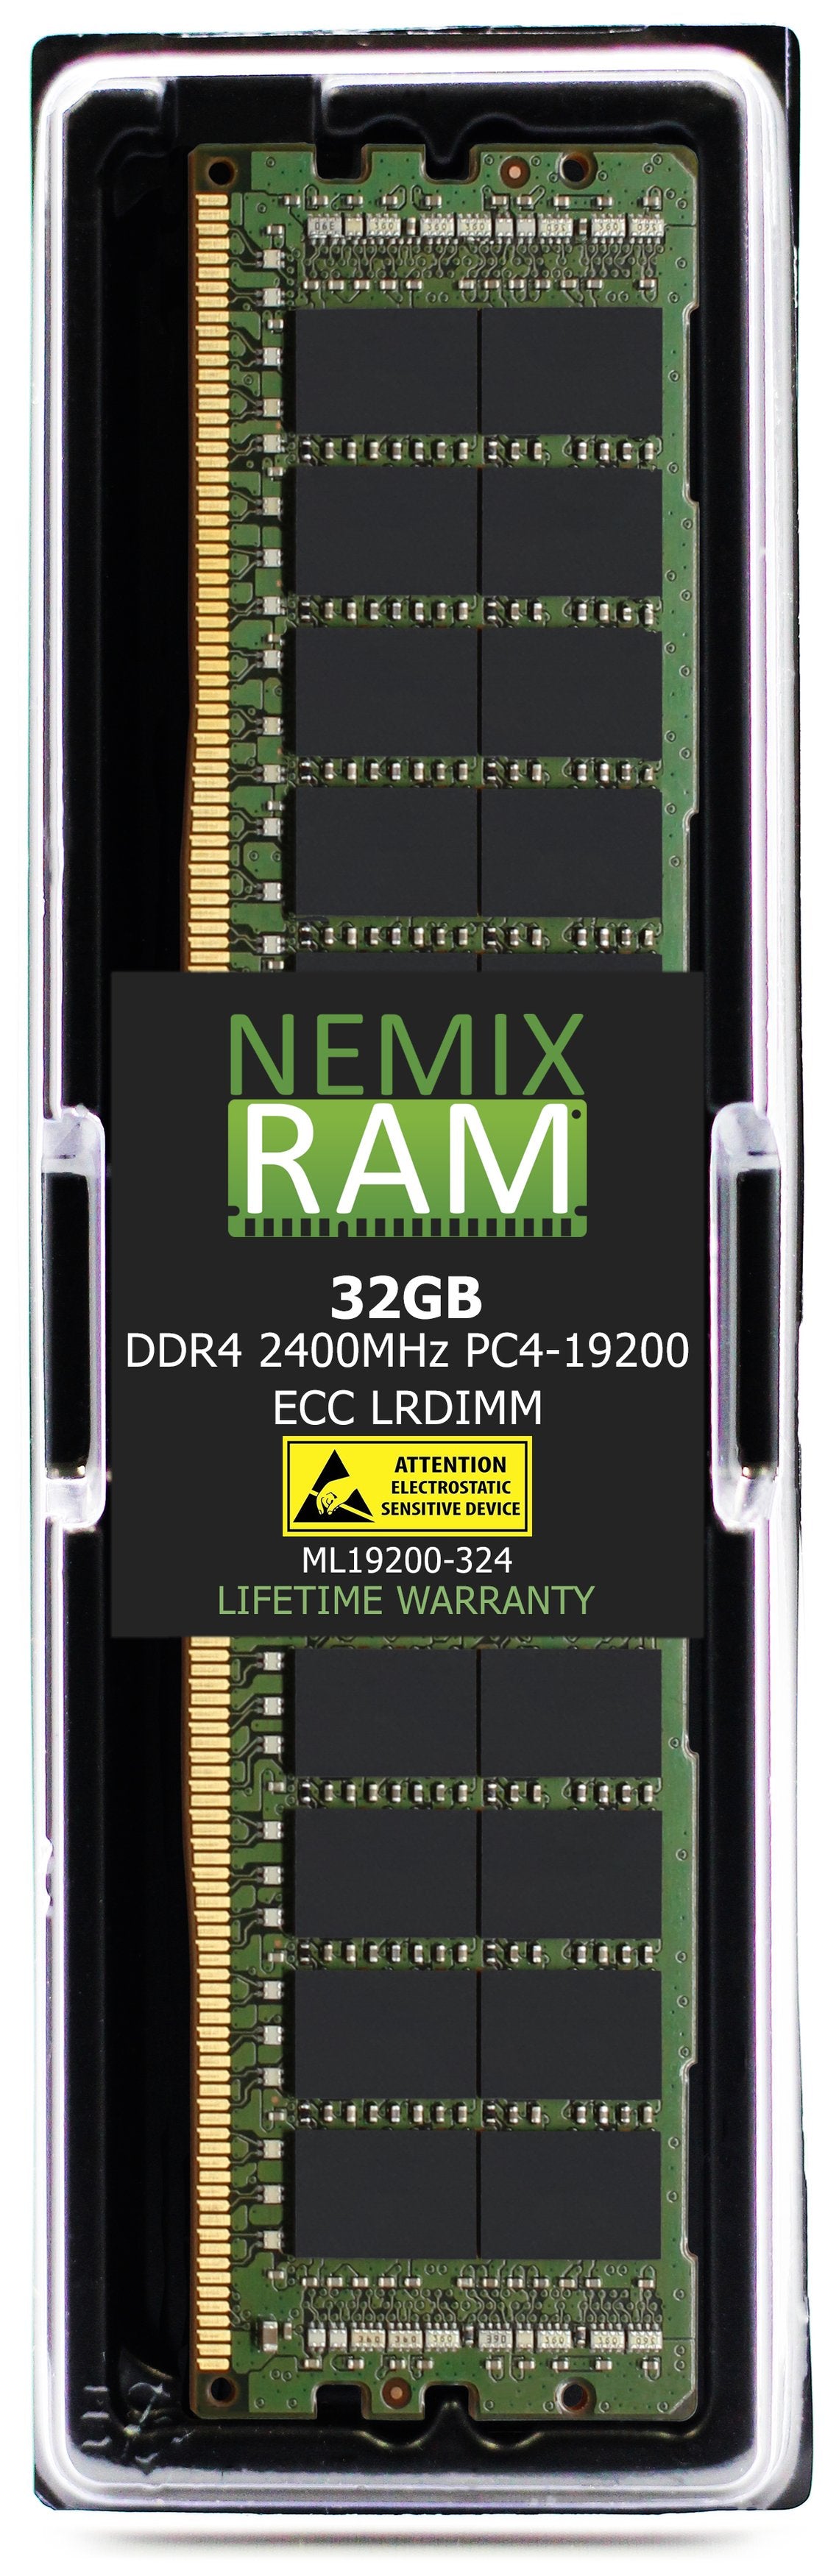 32GB DDR4 2400MHZ PC4-19200 LRDIMM Compatible with Supermicro MEM-DR432L-SL02-LR24